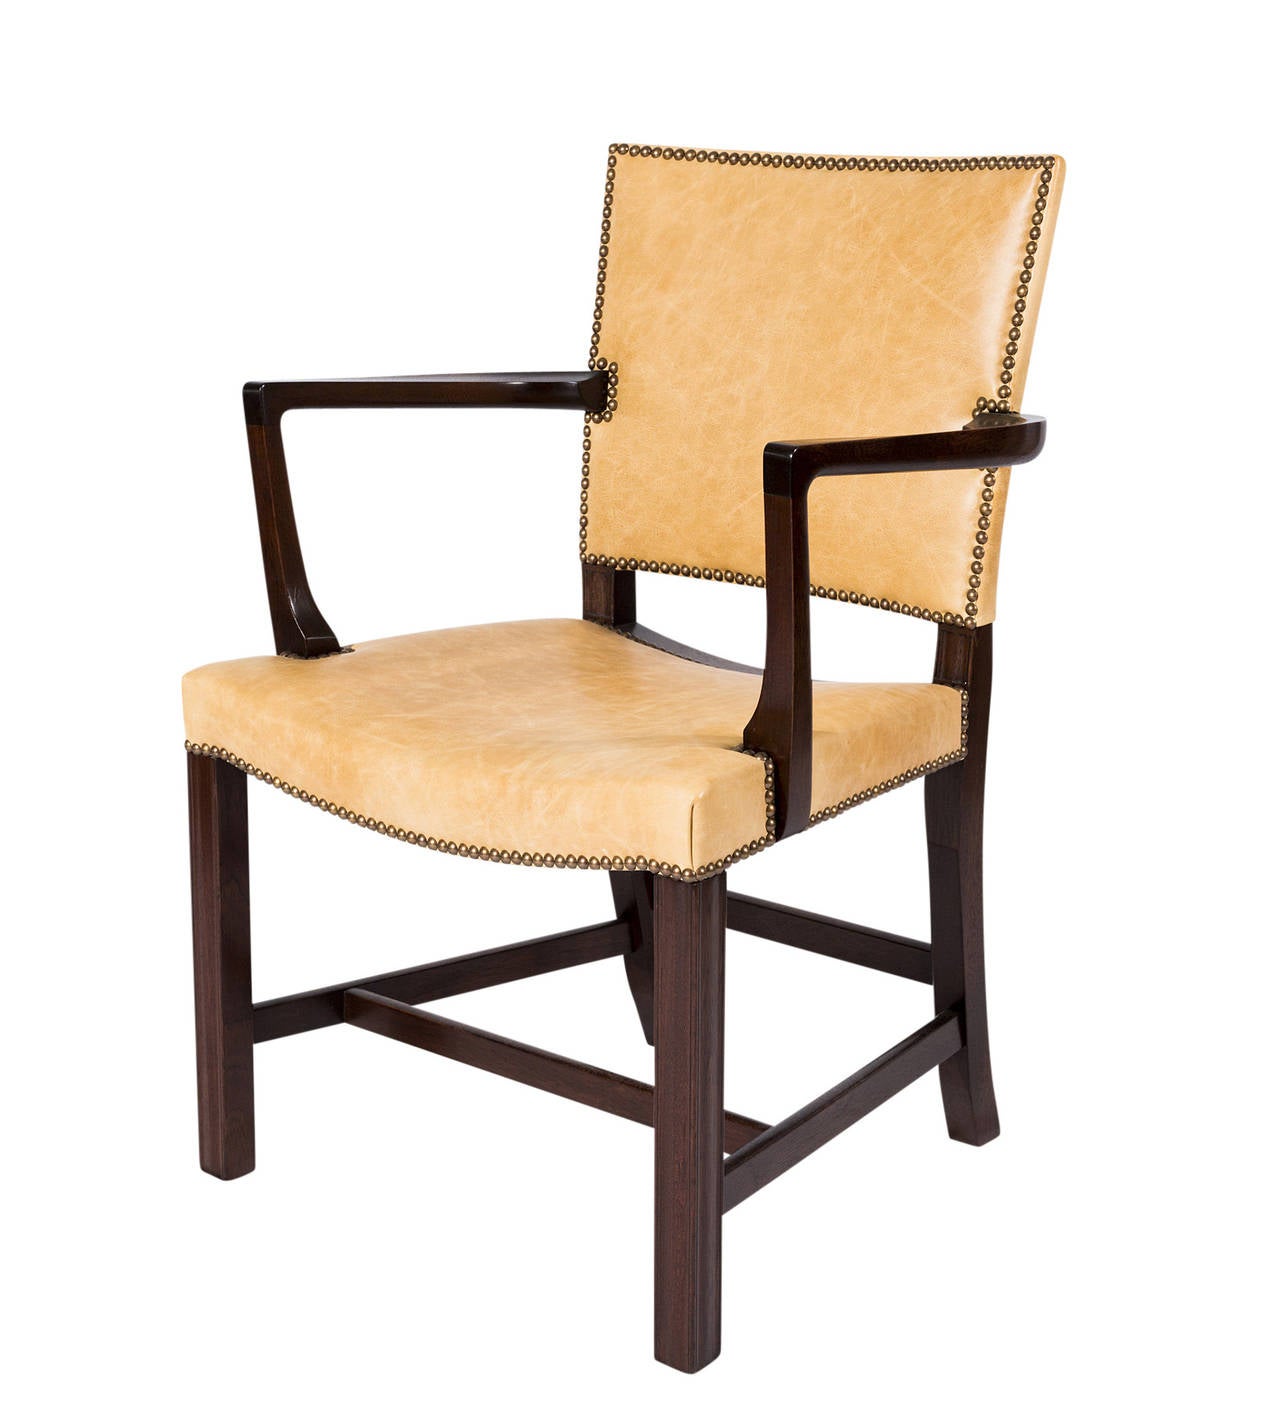 Paire de fauteuils Kaare Klint conçus en 1927 et produits par Rud Rasmussen.